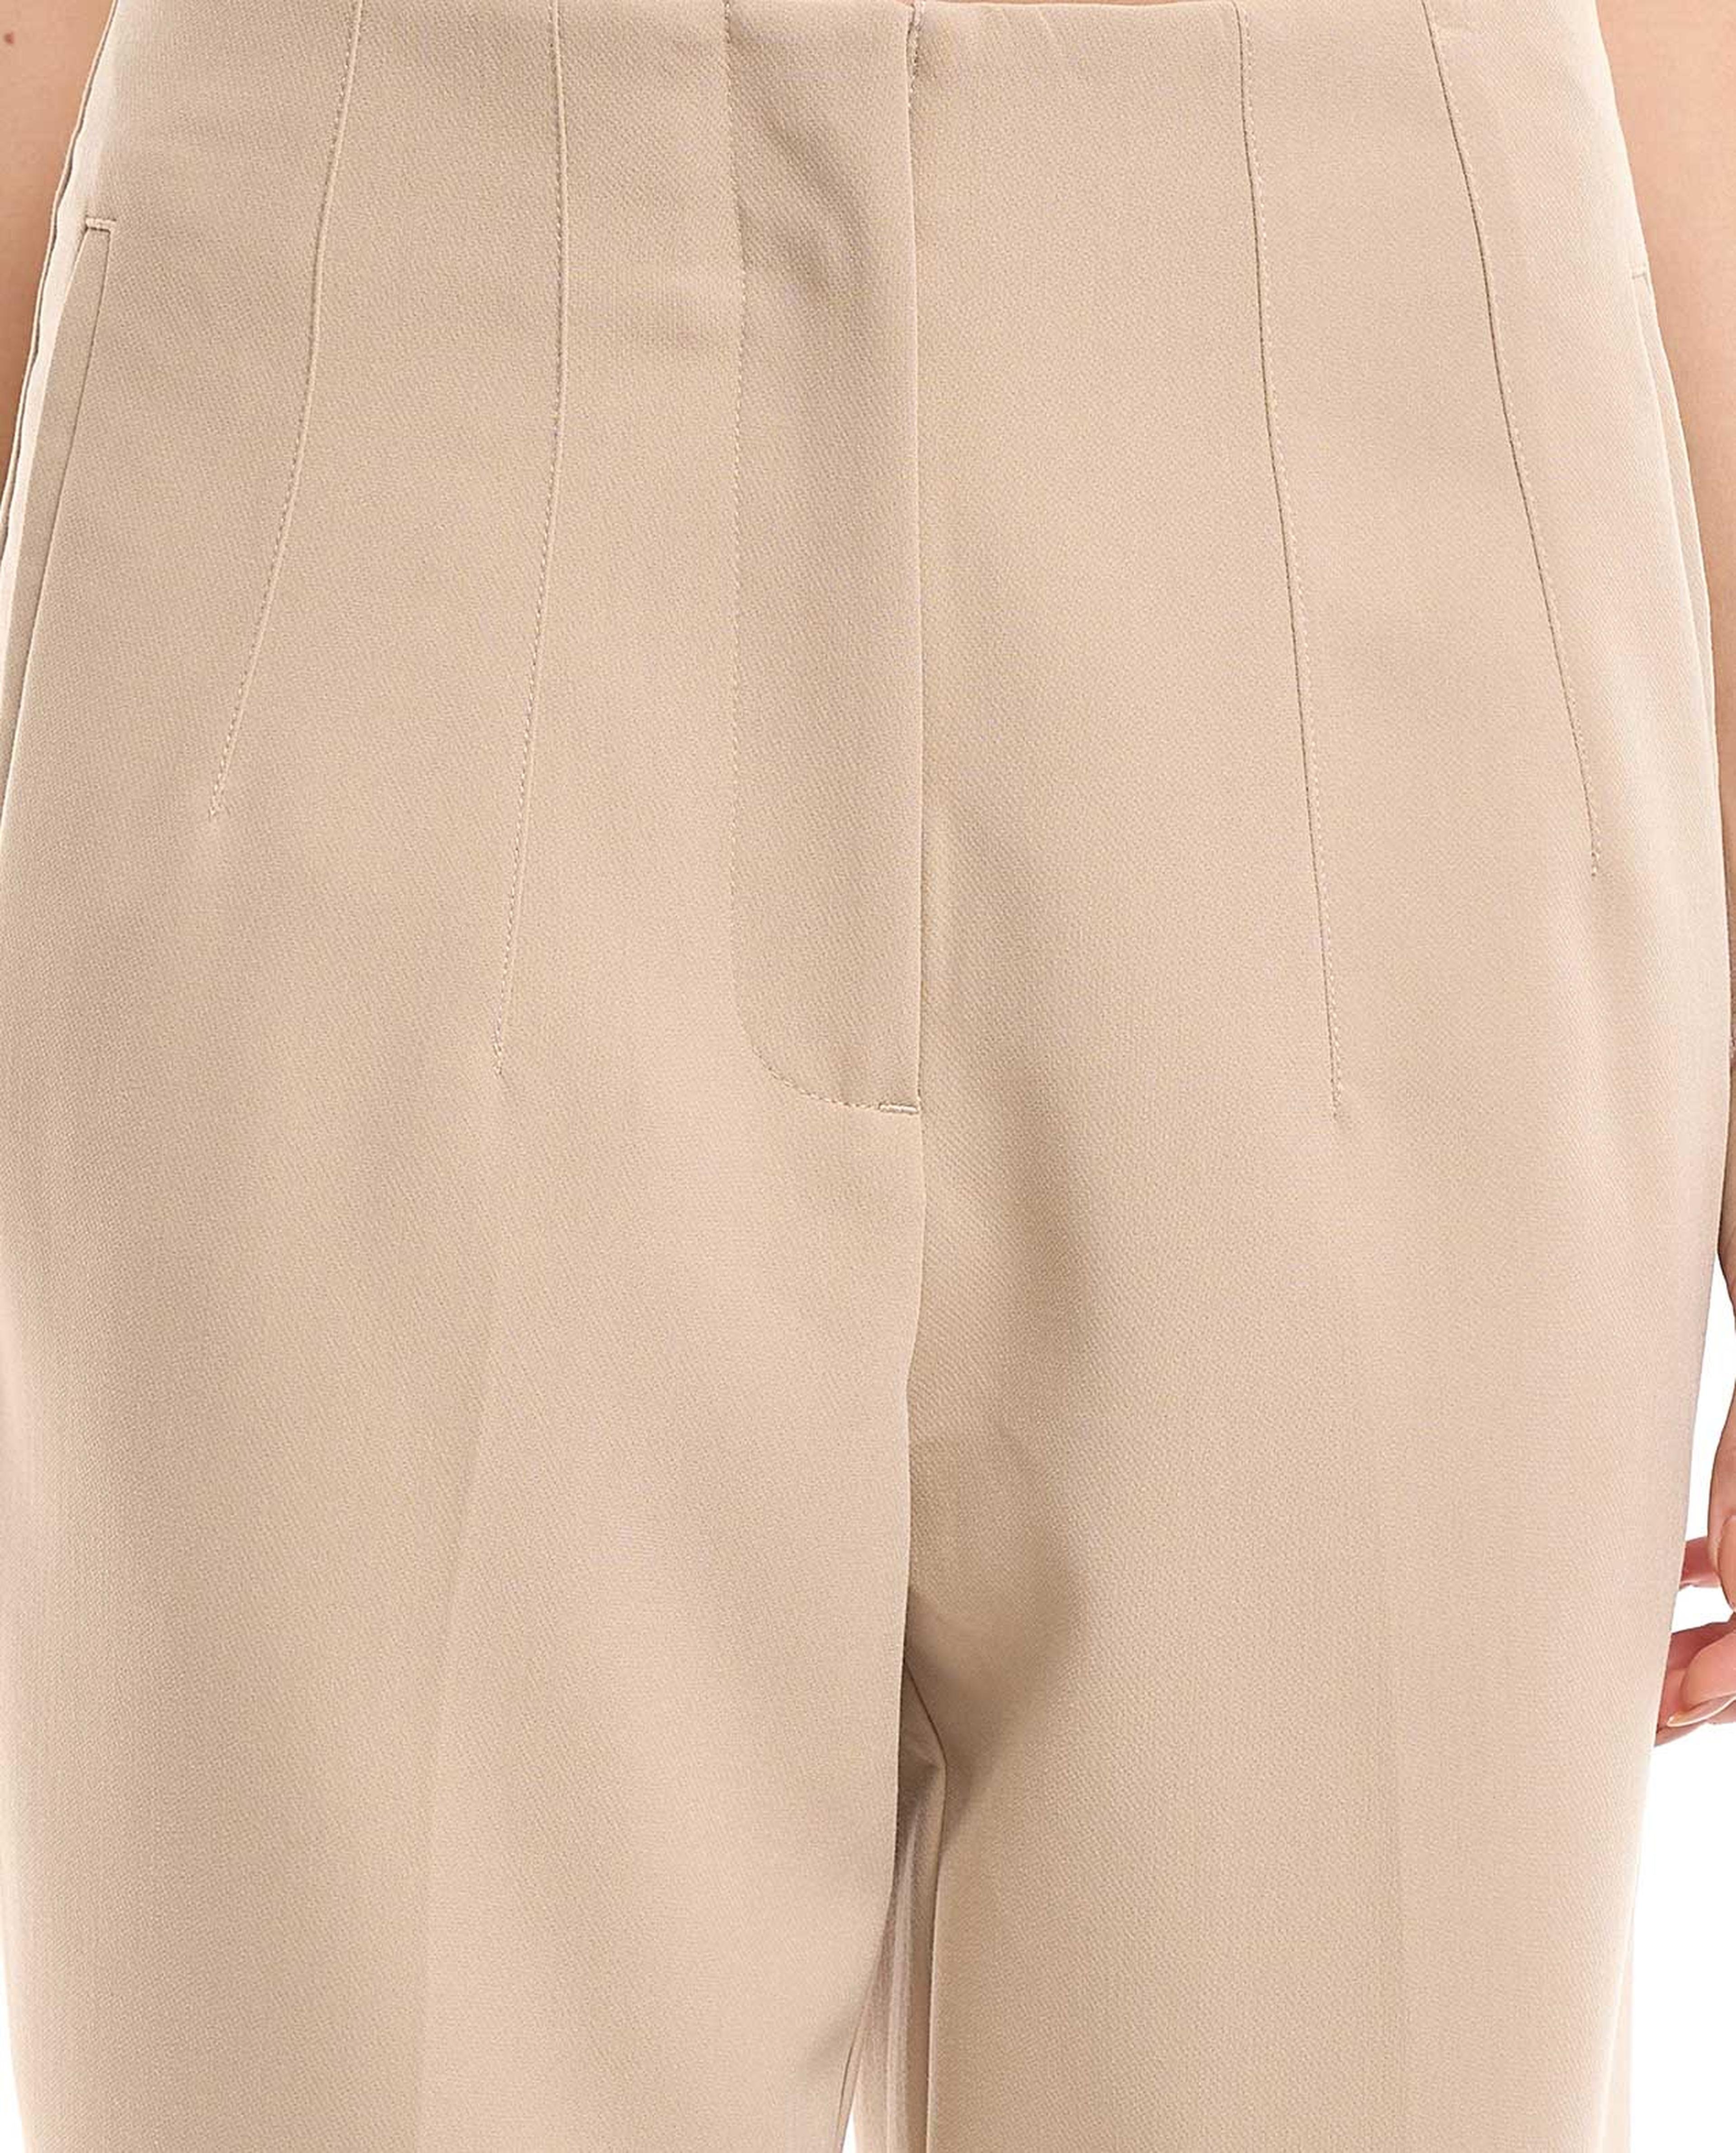 Stitch Detail Slim Fit Trousers